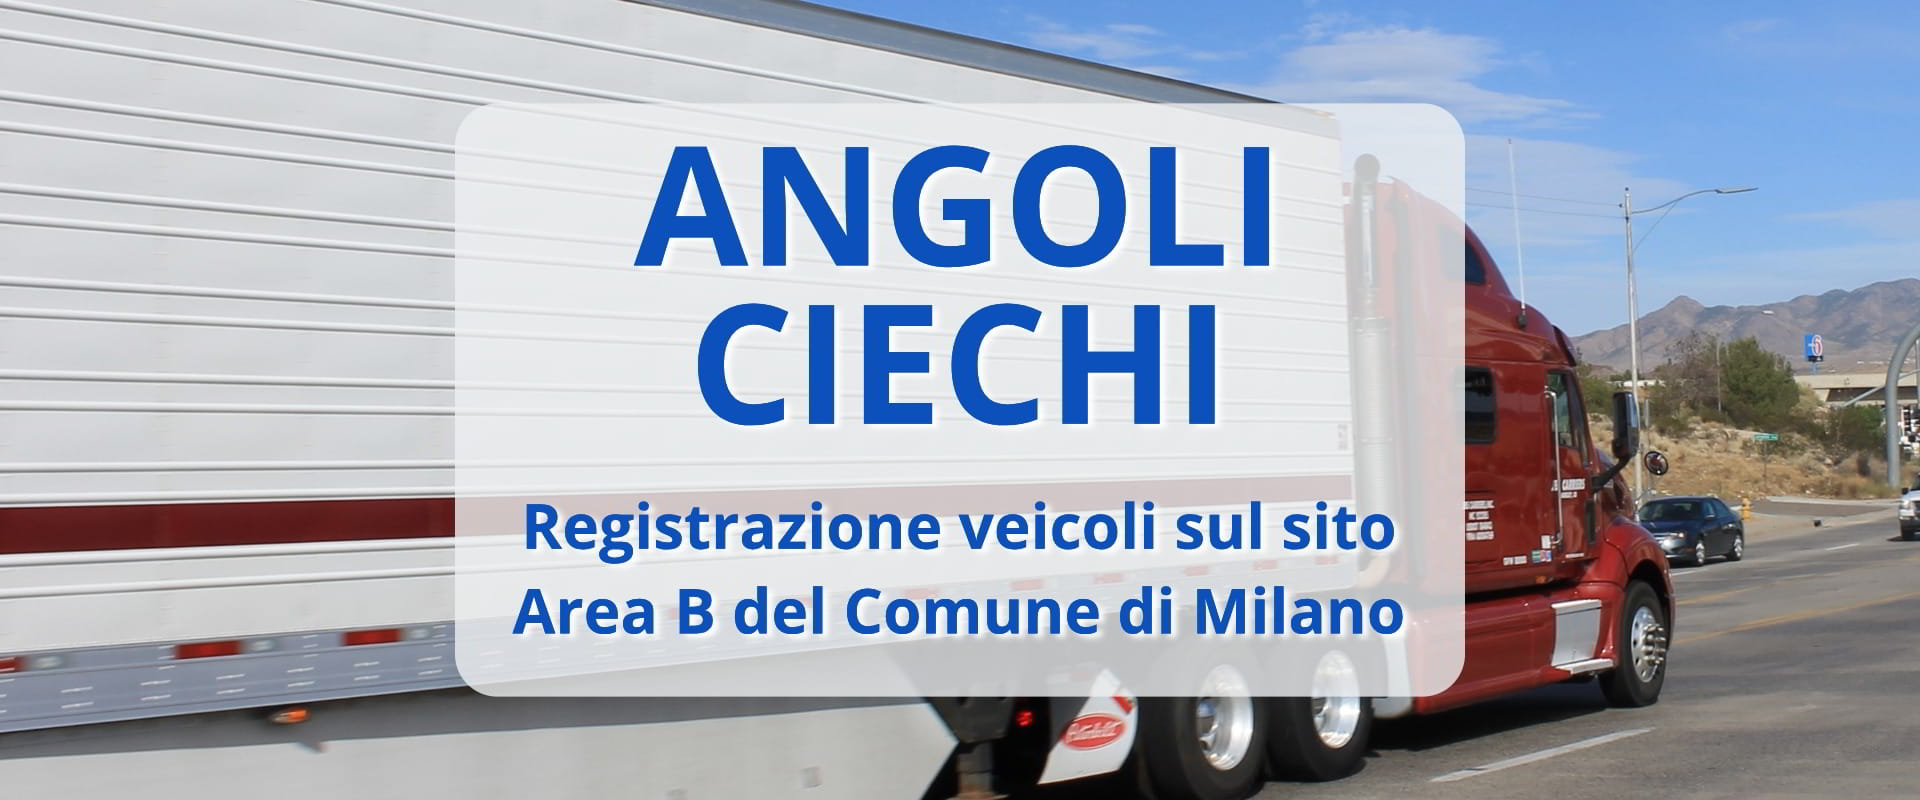 Registra i tuoi camion per gli angoli ciechi sul sito di Area B Milano